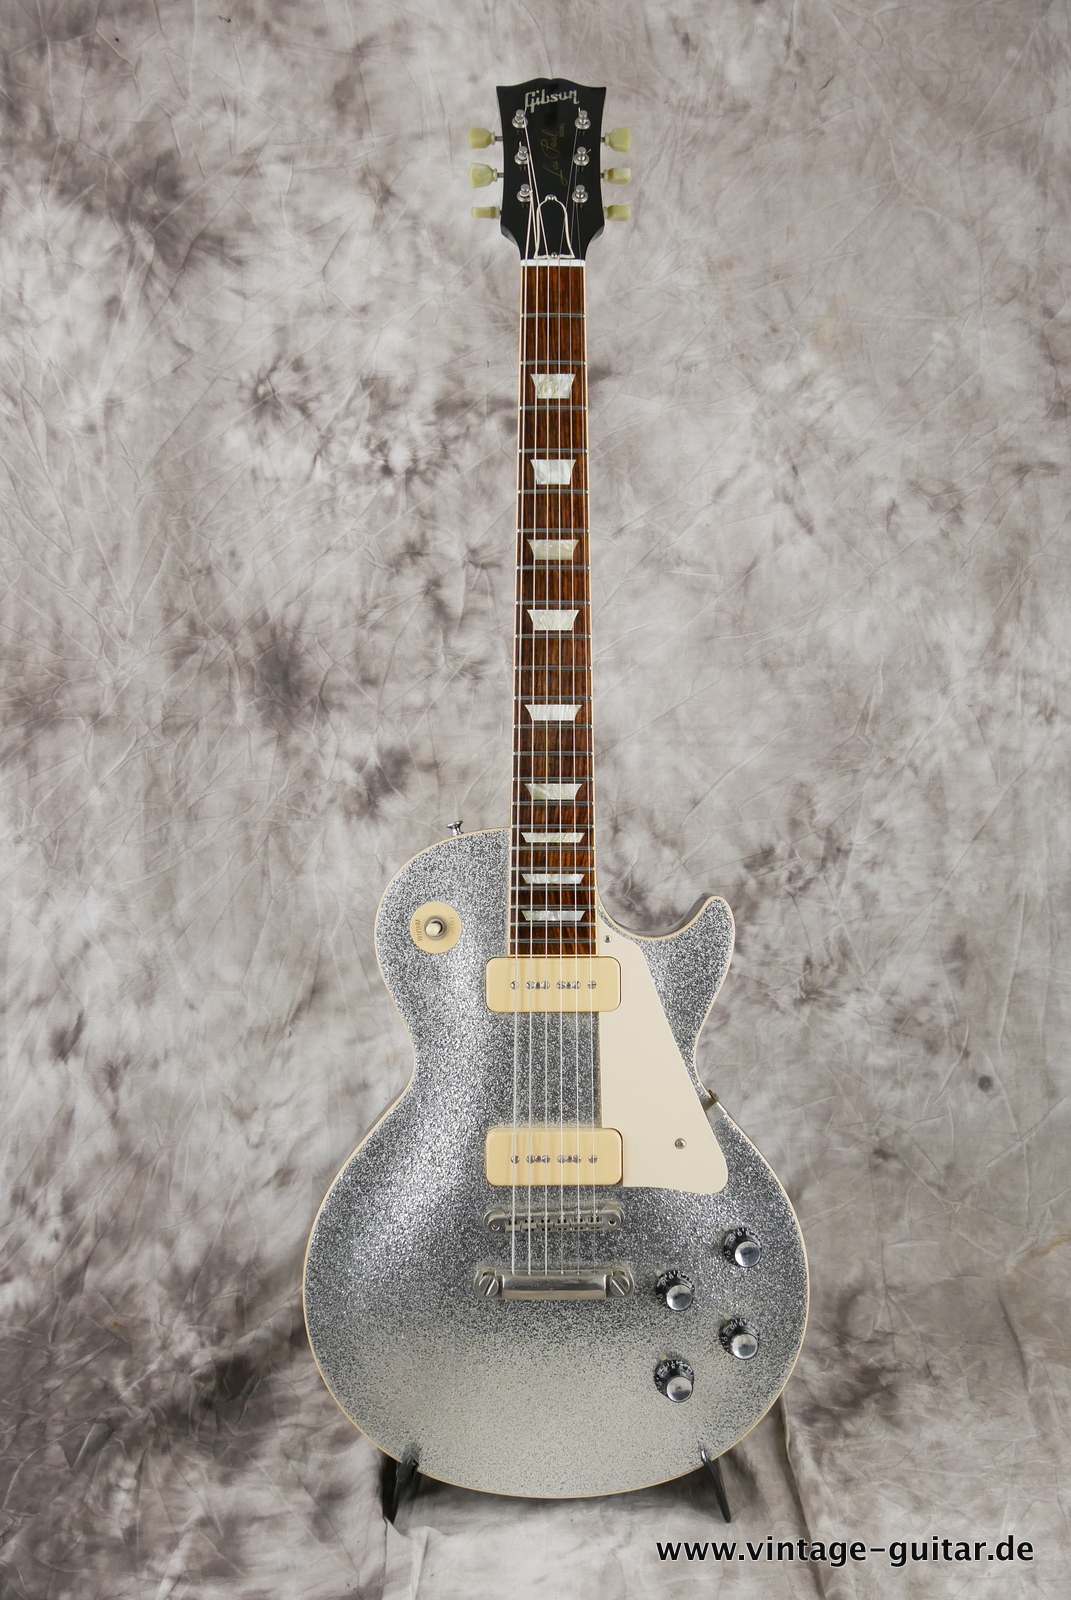 Gibson_Les_Paul_P_90_Custom_Shop_limited_edition_silver_sparkle_2008-001.JPG